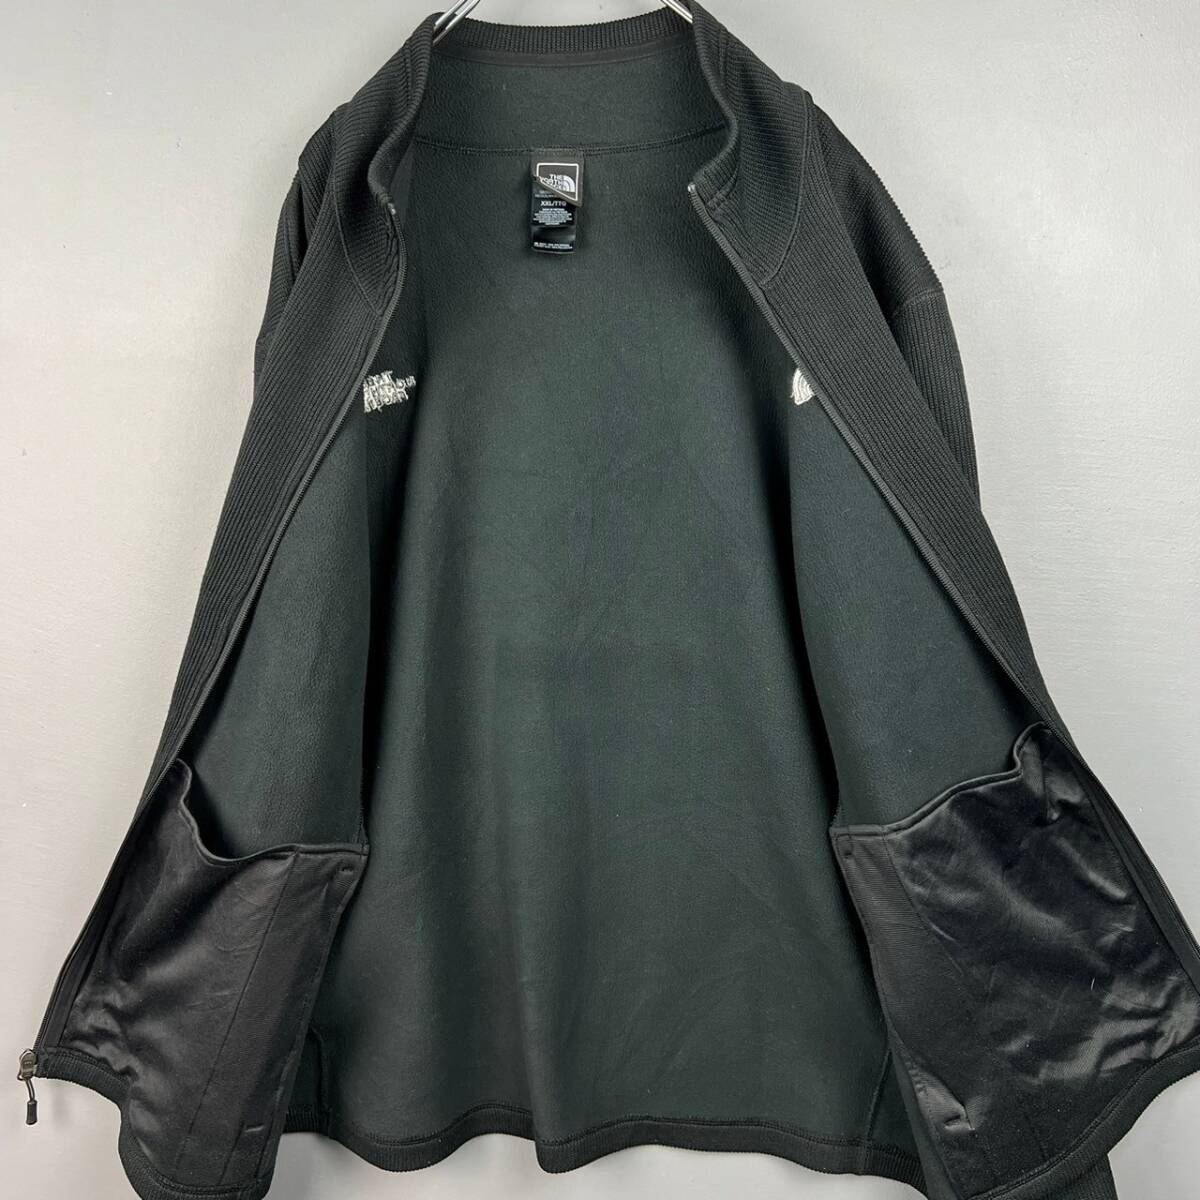 Wm436 正規品 ザノースフェイス クレストウッド フルジップセーター ジャケット ブラック 黒 刺繍 メンズ XXL 大きいサイズの画像5